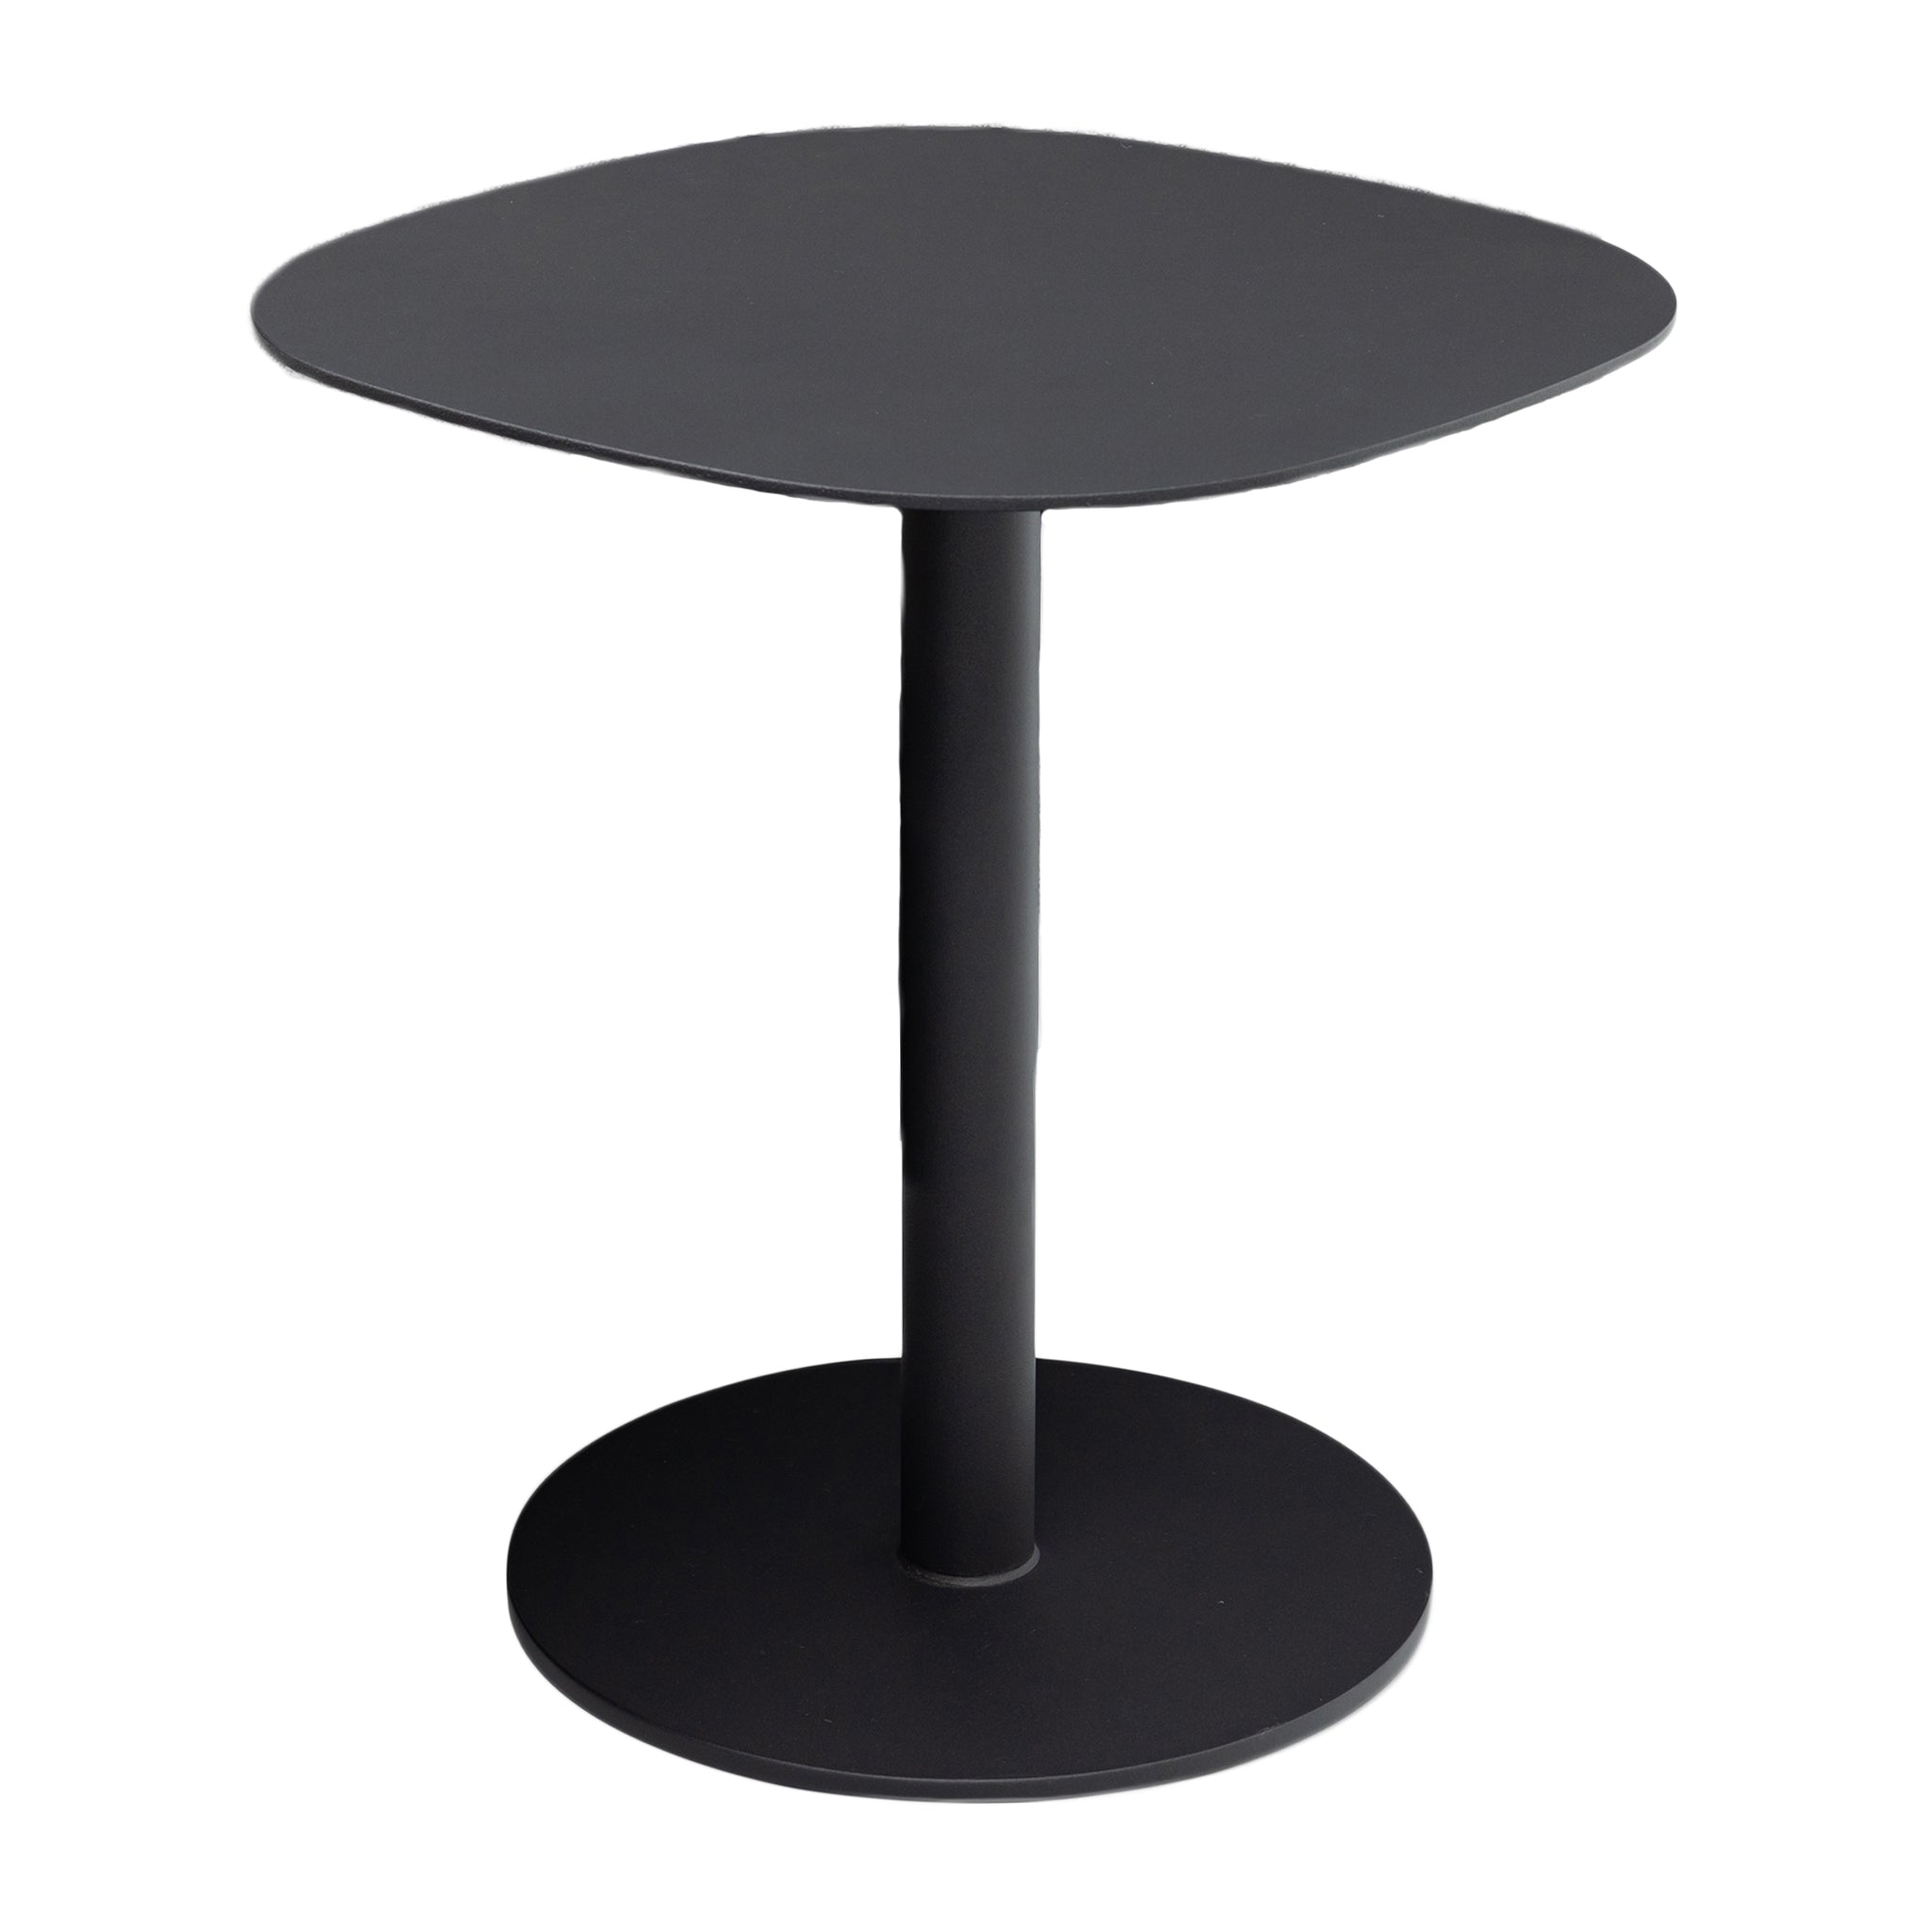 Luna Side Table - 45cm x 45cm